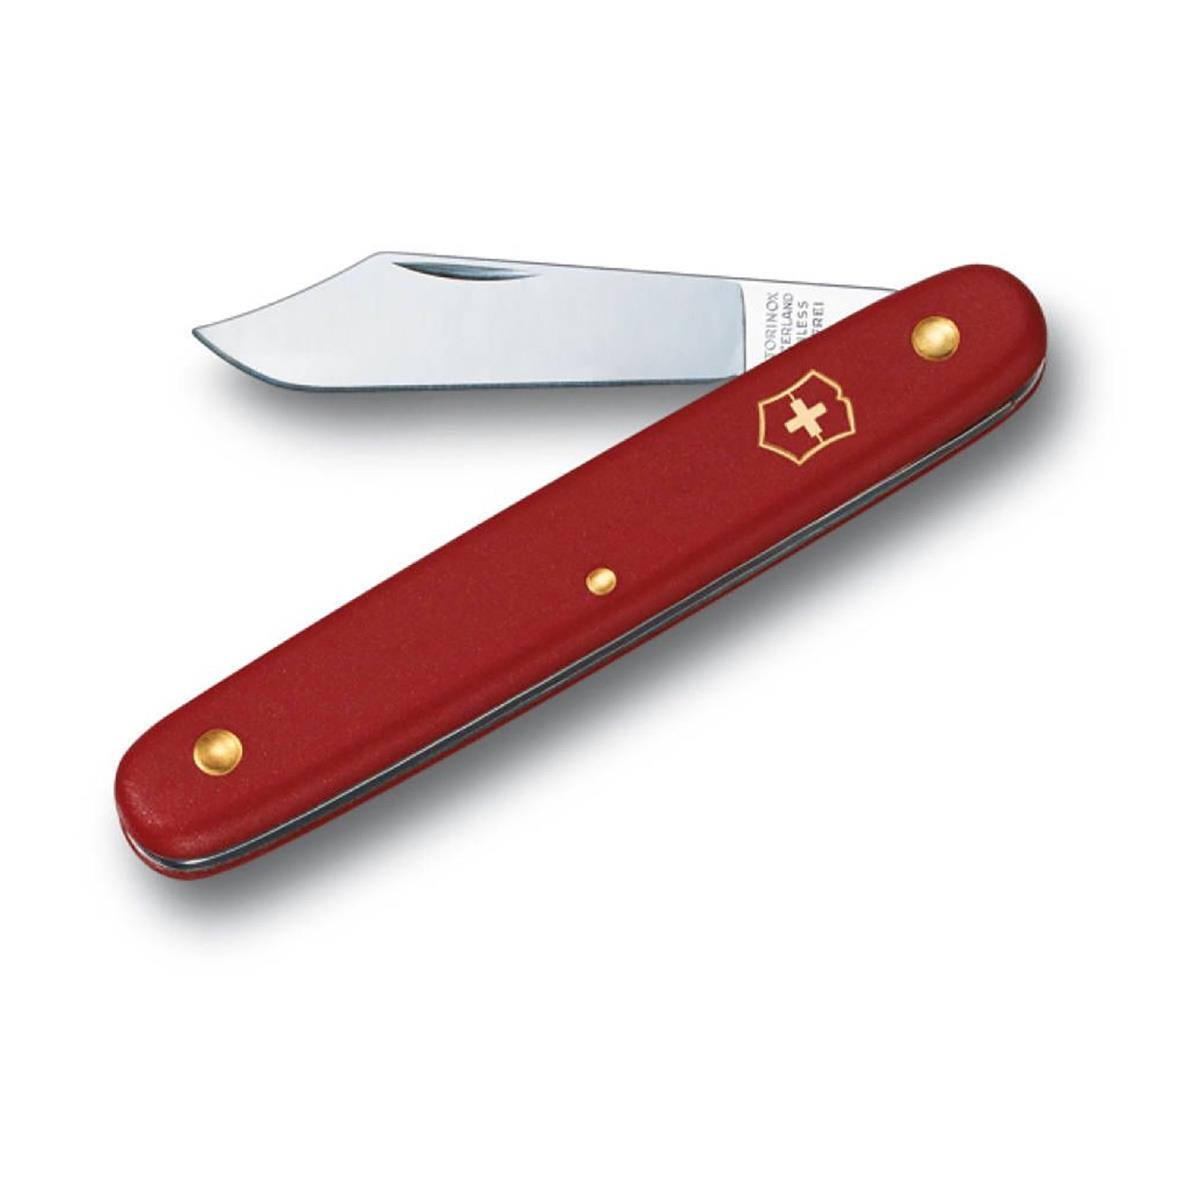 Нож 3.9010 садовый, красная рукоять VICTORINOX hello pet колтунорез капля с одним лезвием карманный